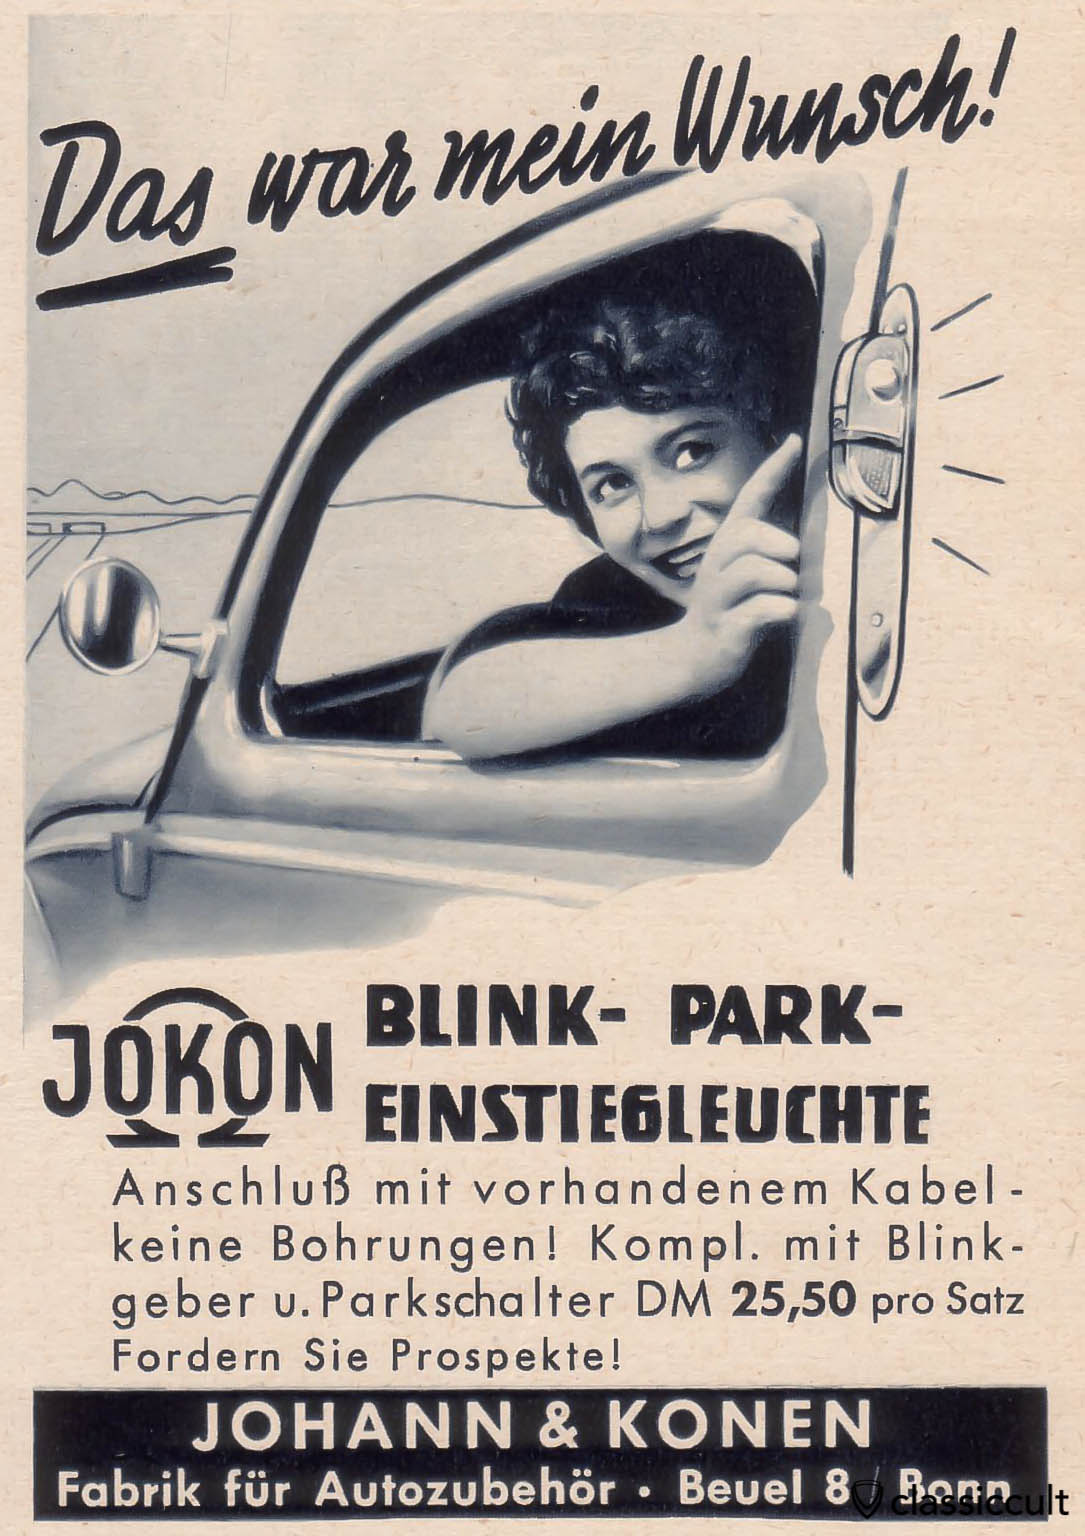 Vintage Accessory Parking Lights for VW